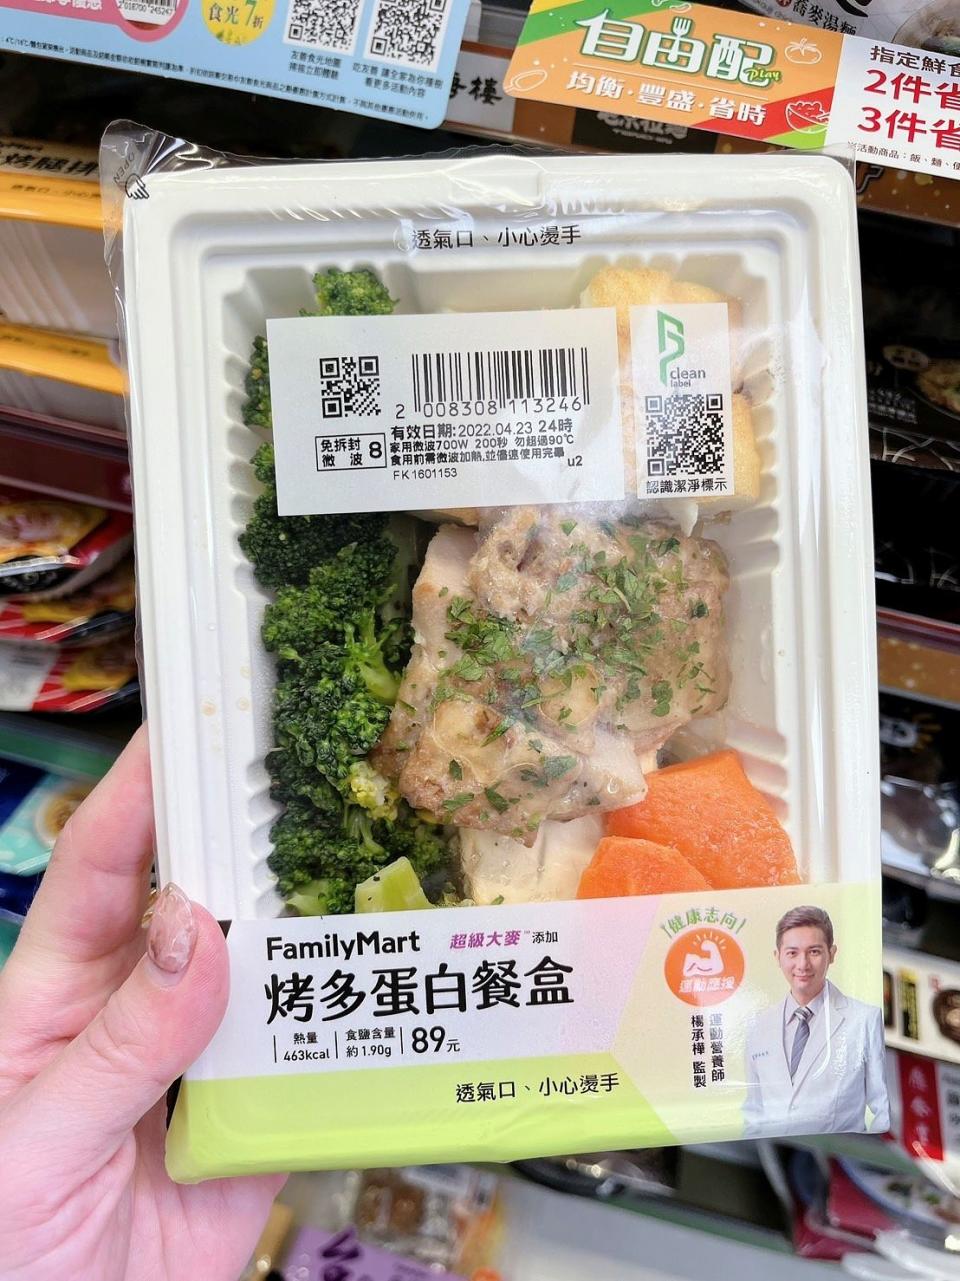 若平常不想吃太多，可以選擇這種蛋白質足夠、熱量低的餐盒 照片來源：LOOKin編輯拍攝